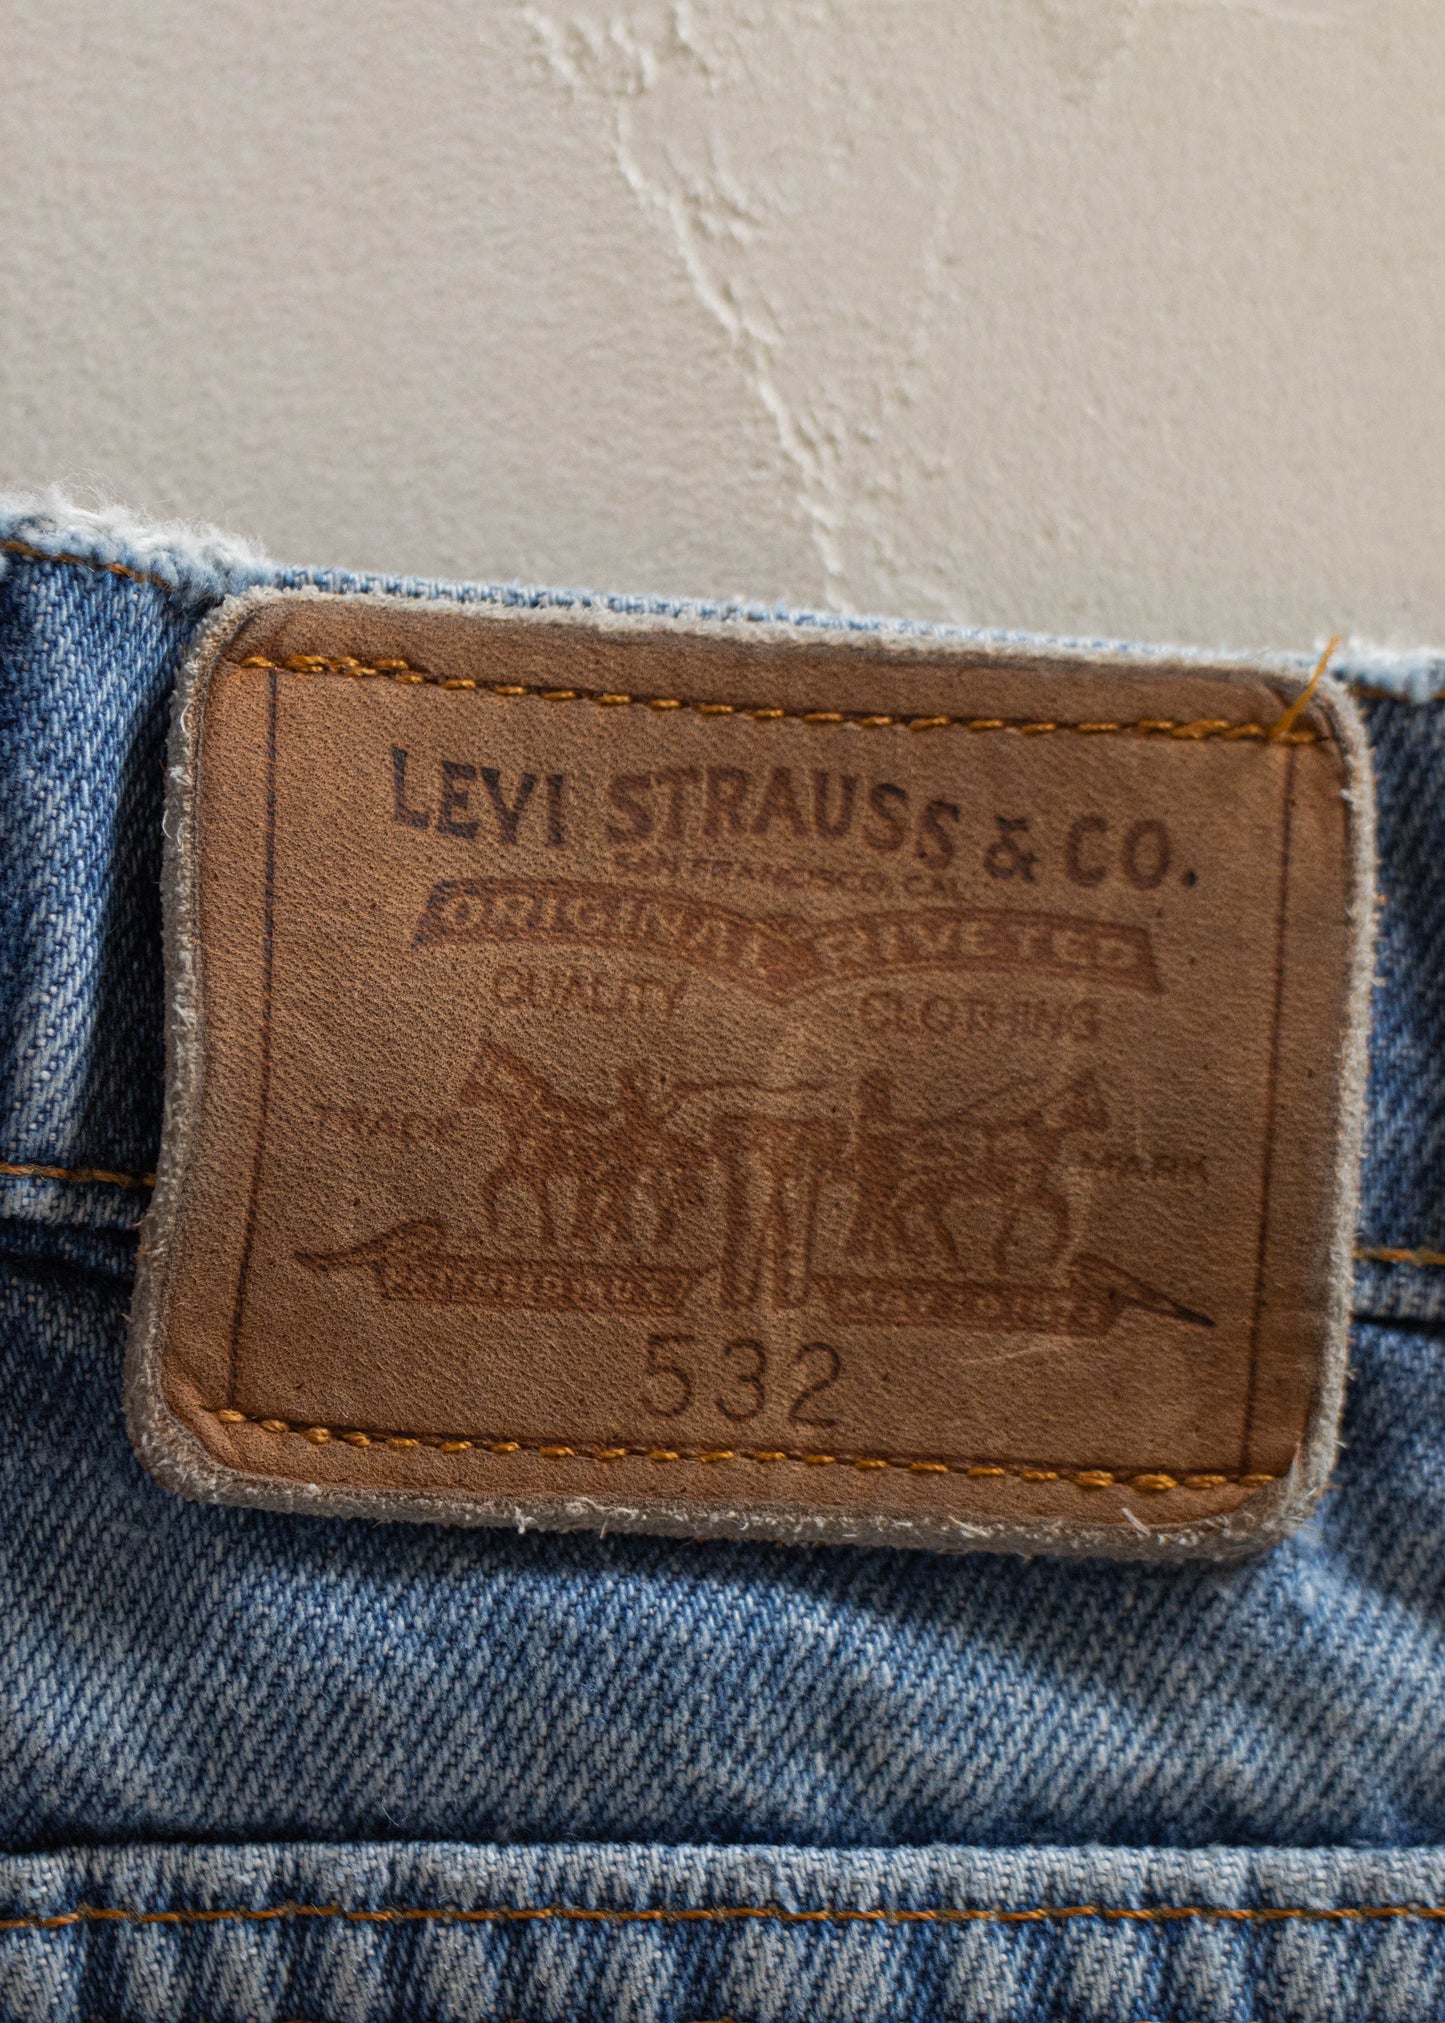 1980s Levi's 532 Lightwash Jeans Size Women's 30 Men's 32